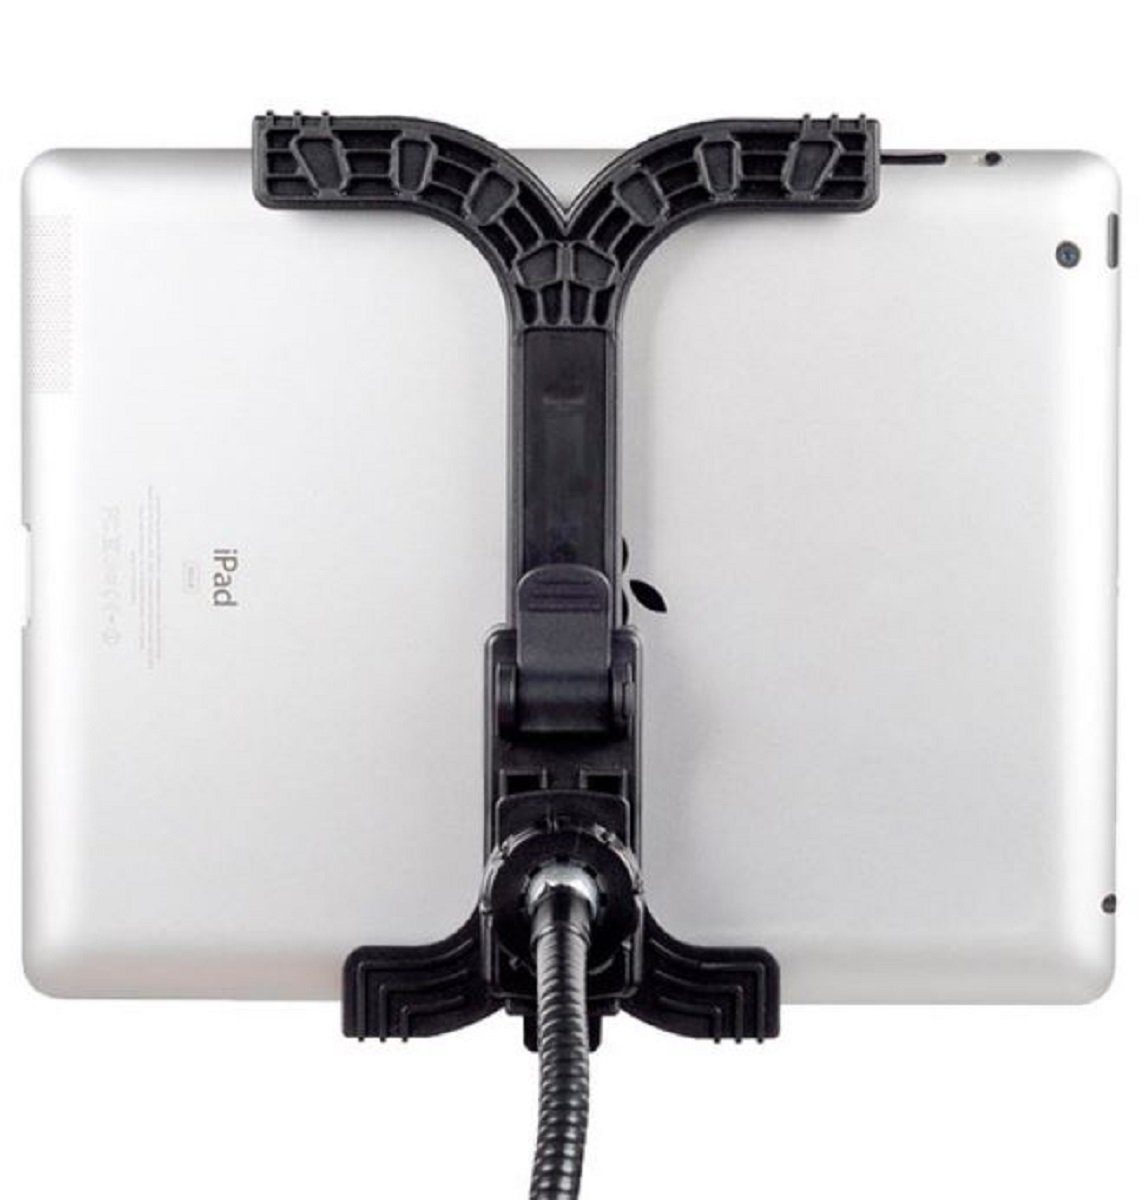 Tischstativ Halterung Tablets Handys Schwanenhals für und BR-145 BRESSER flexible